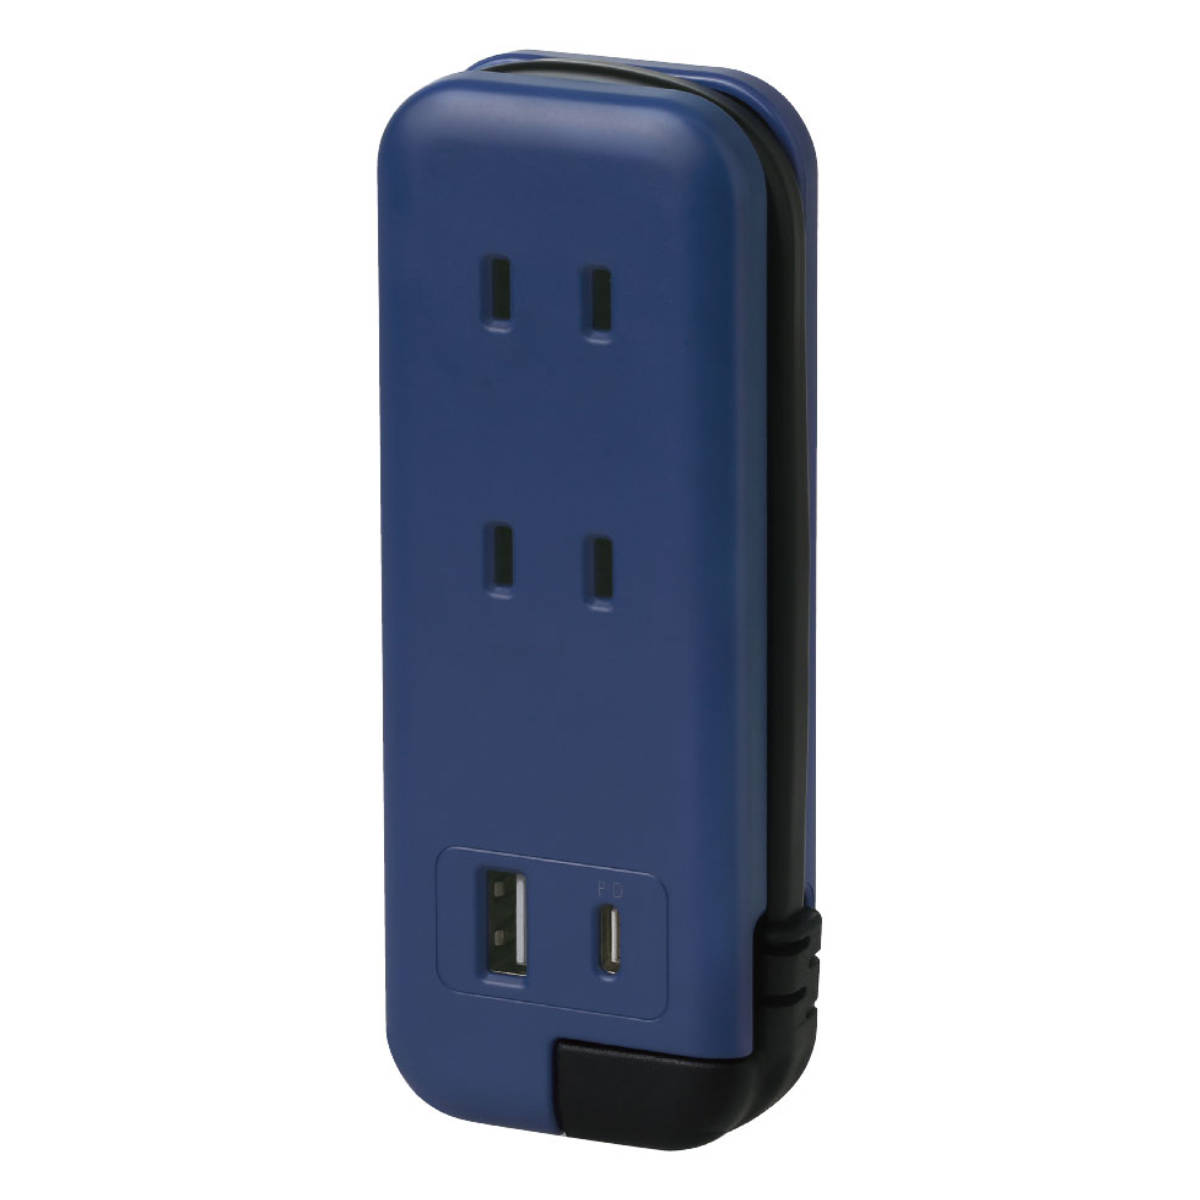 USB アダプター ACアダプター コンセント 充電器